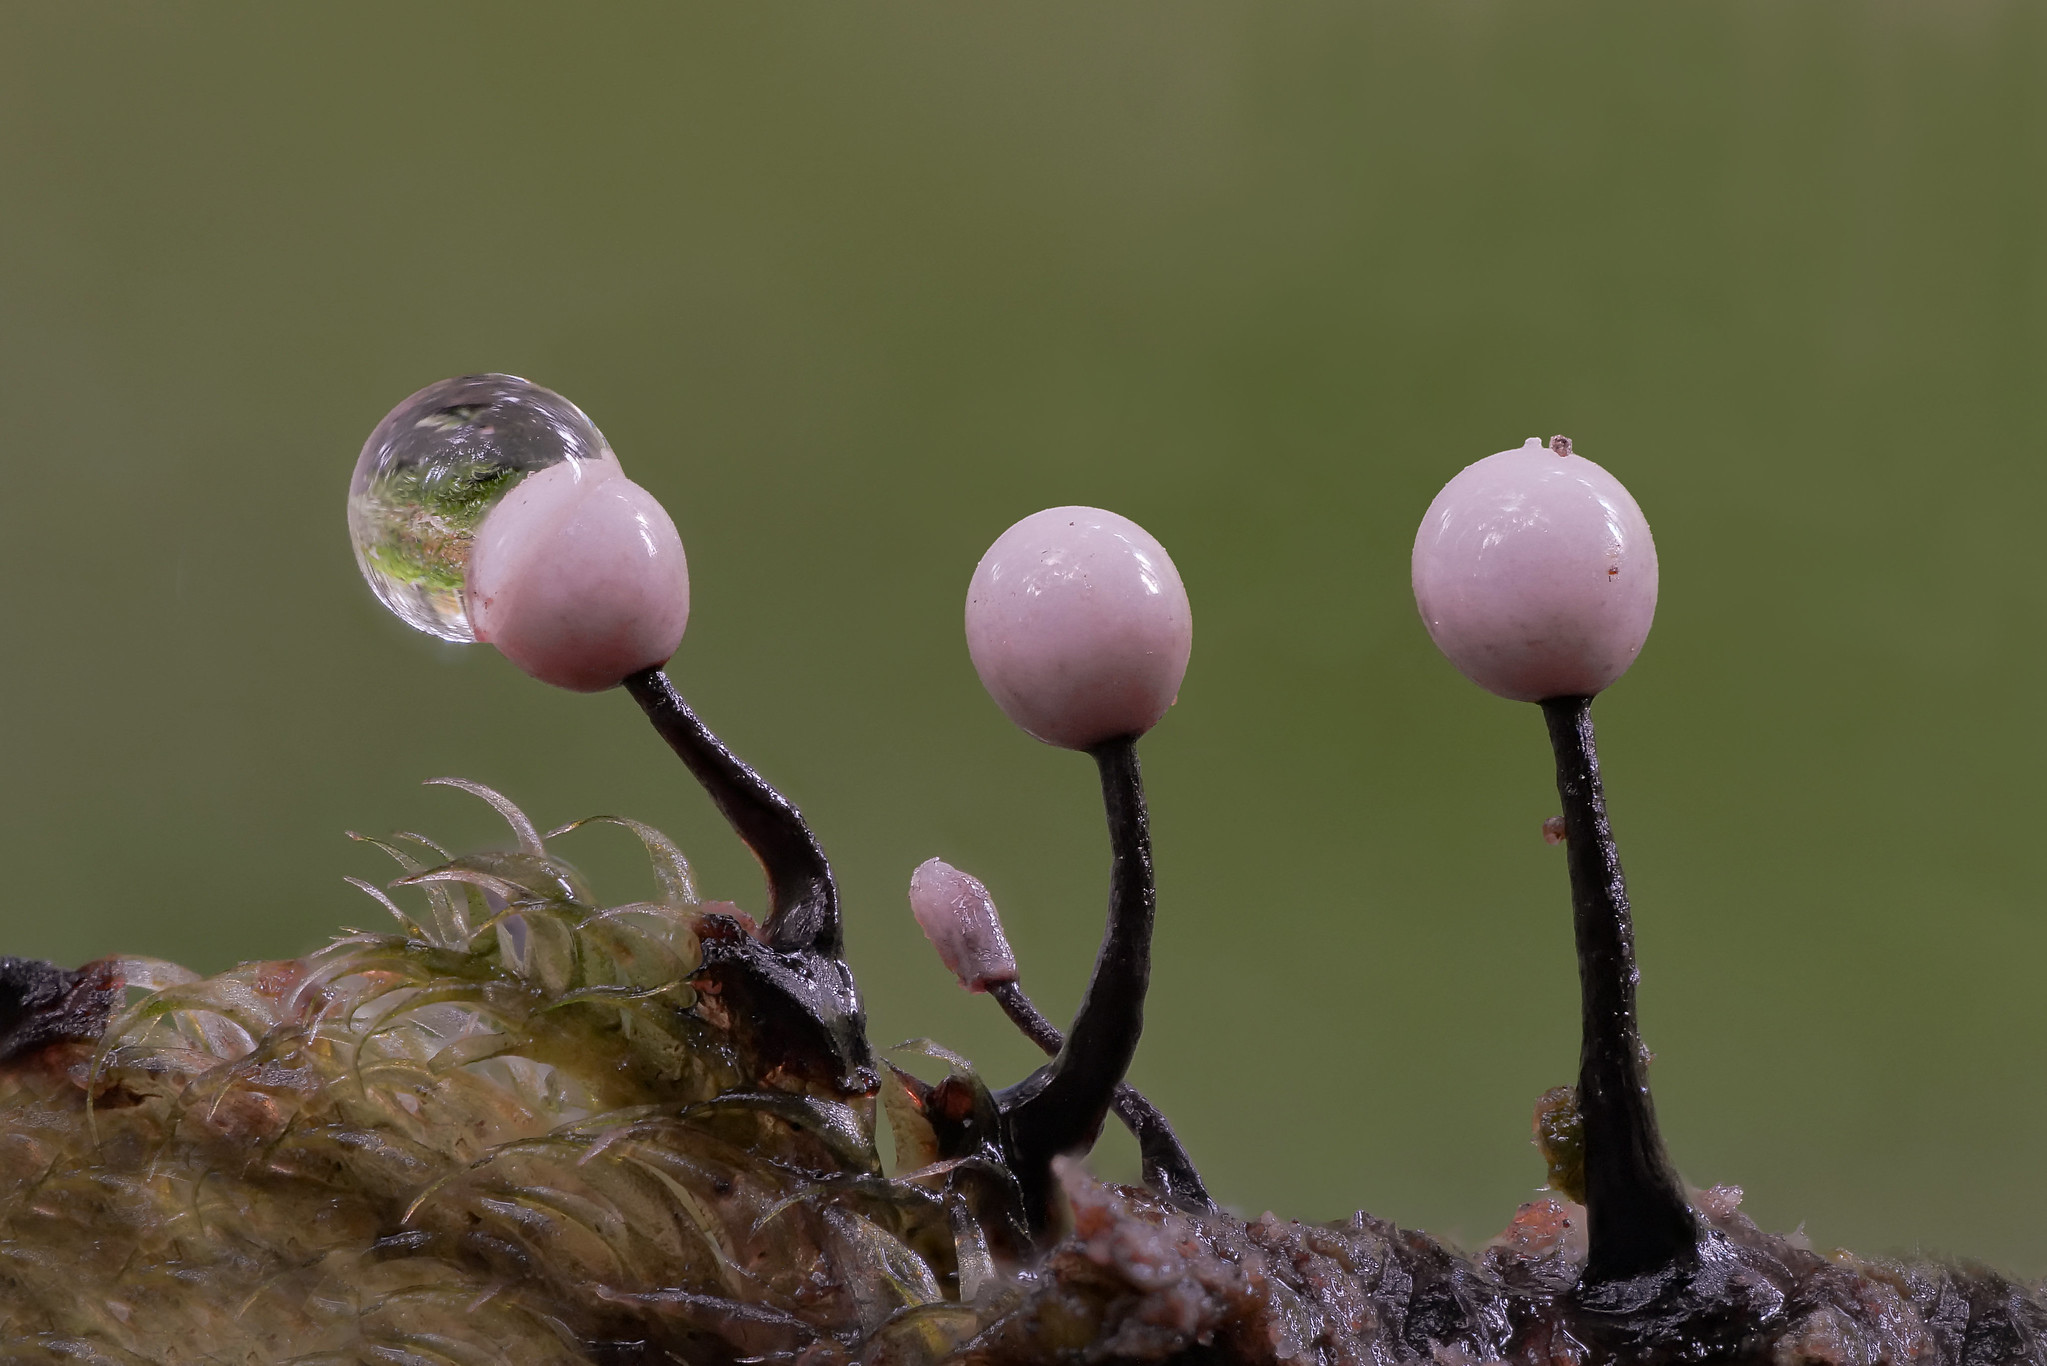 Плесневые грибы это низшие